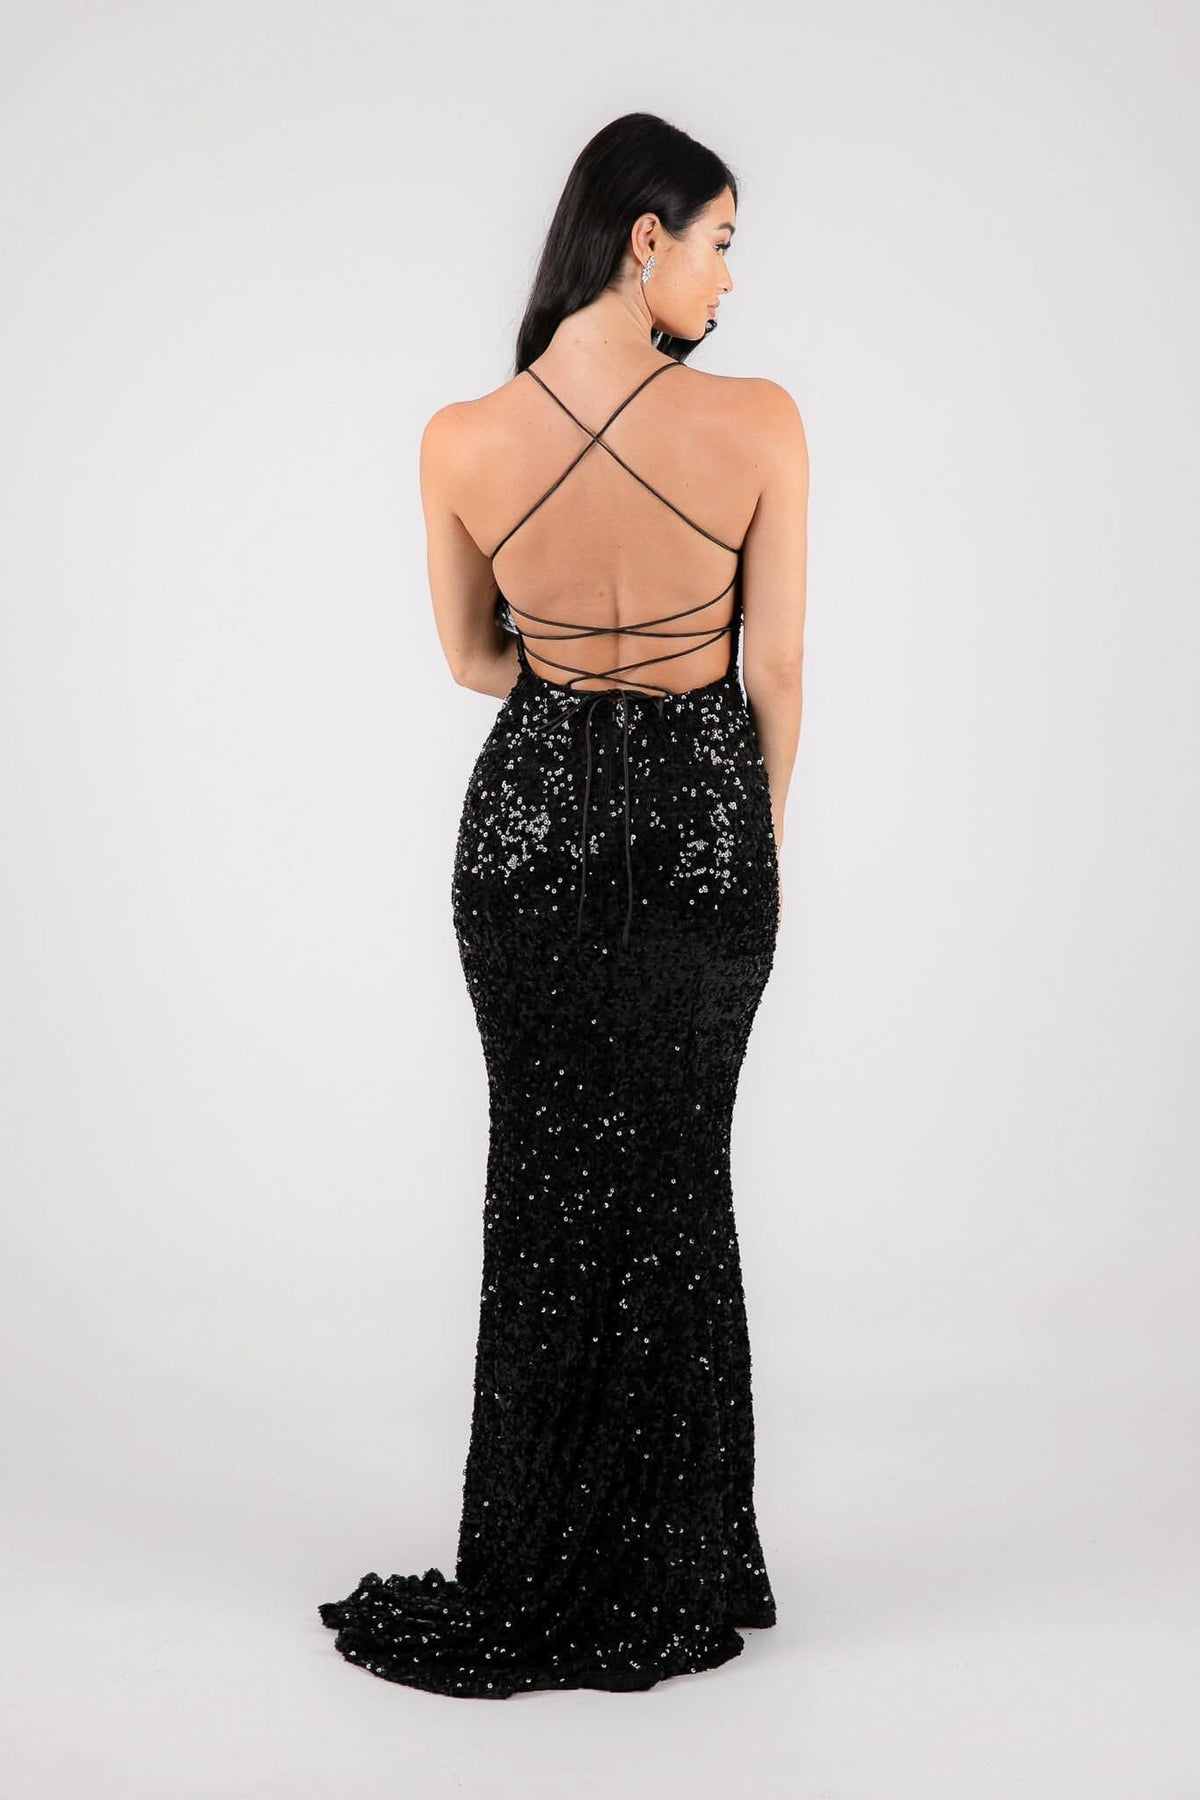 Lace Up Open Back Design of Black Velvet Sequin Full Length Formal Gown with V Neckline and Side Slit